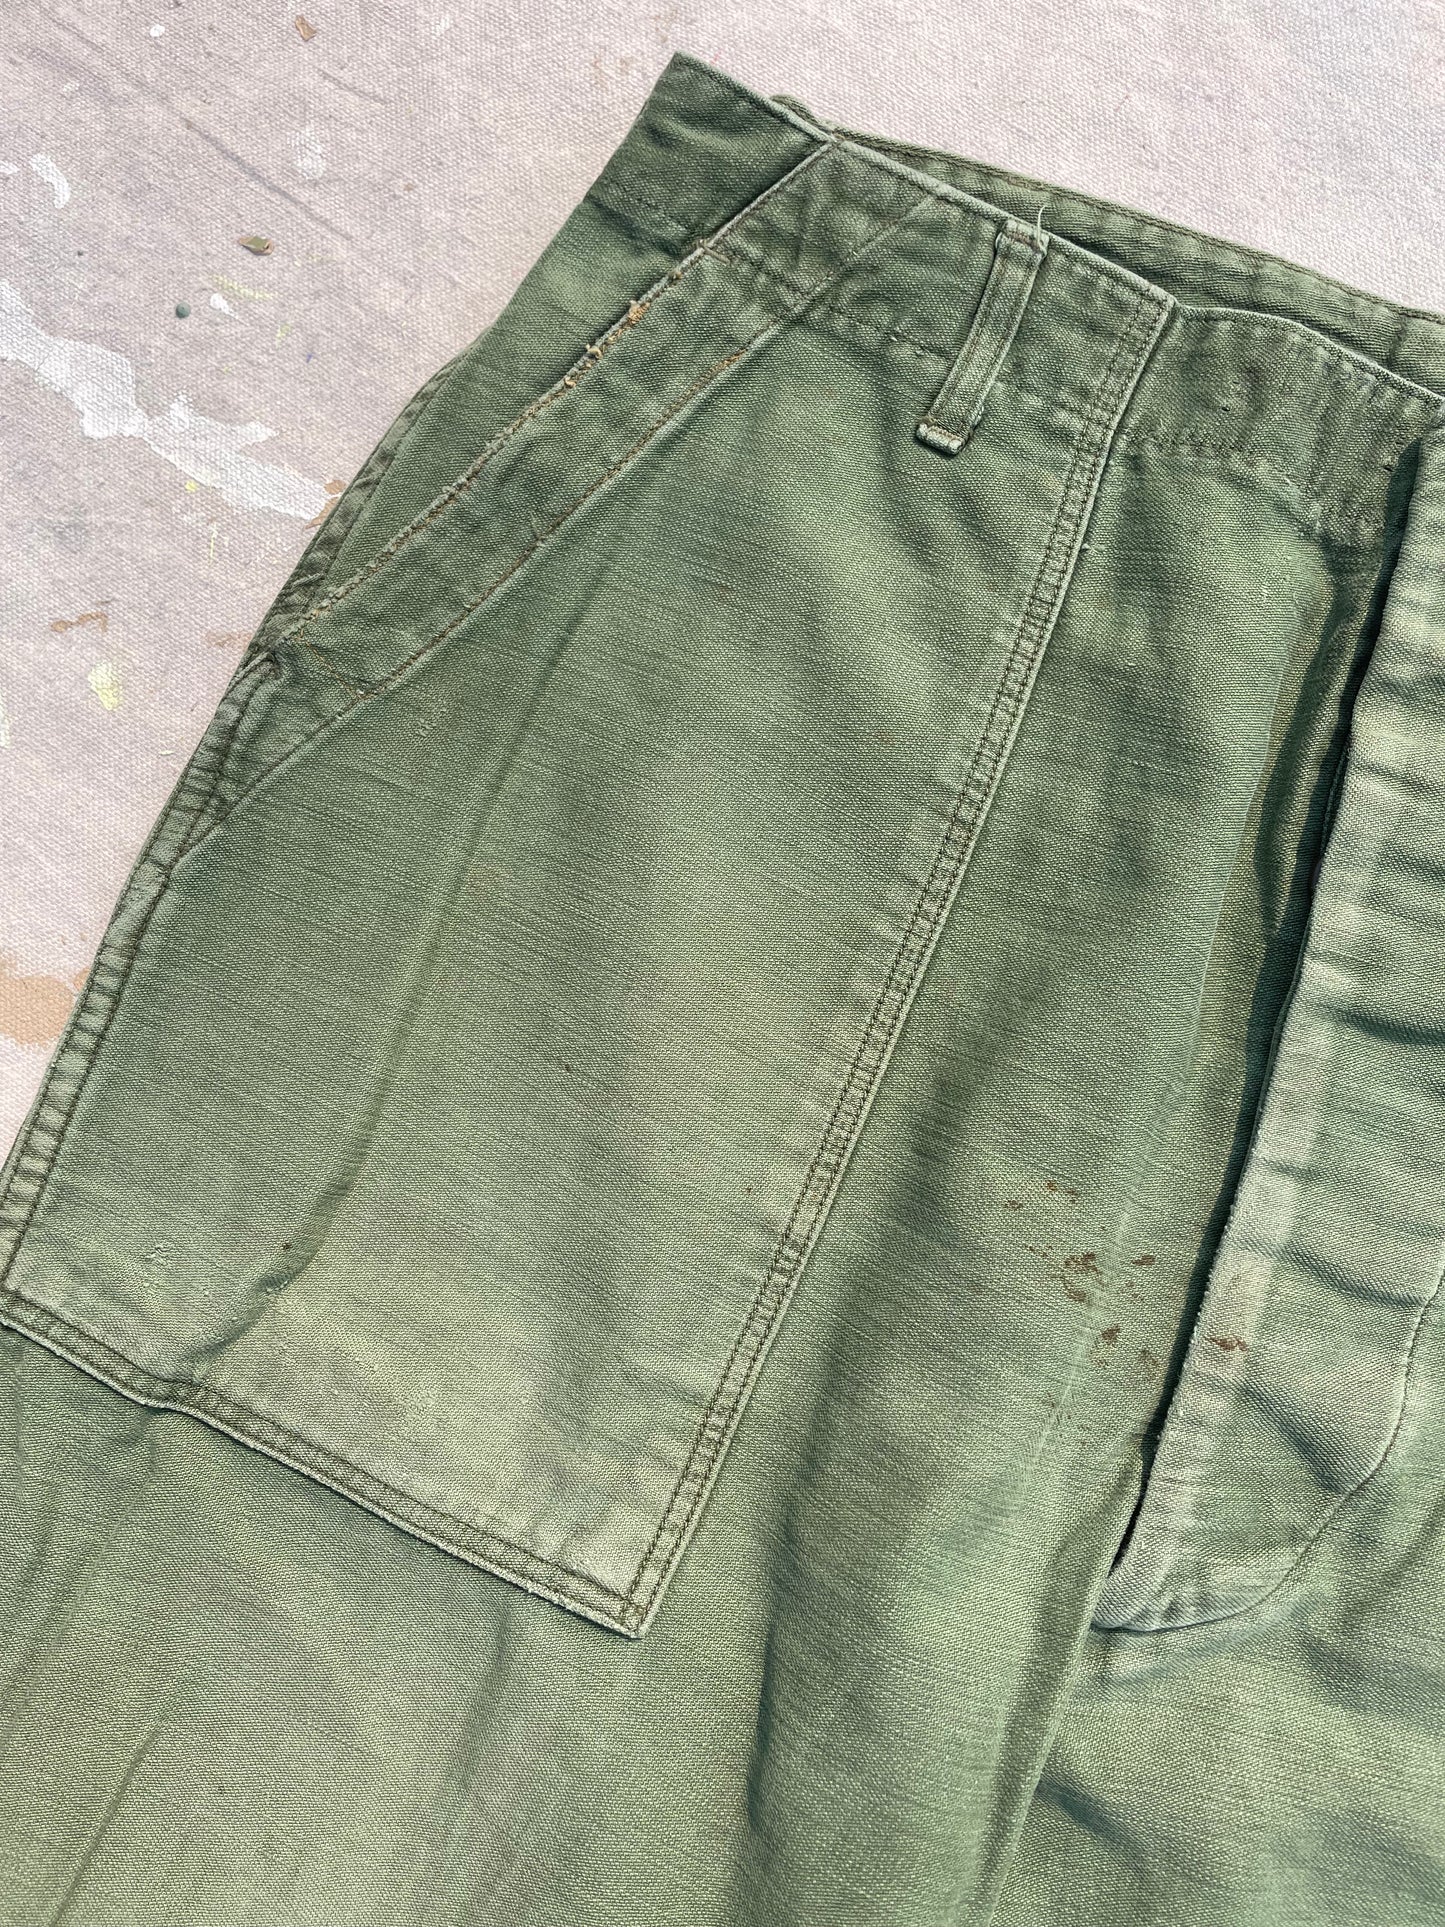 50s OG-107 Army Fatigue Baker Pants